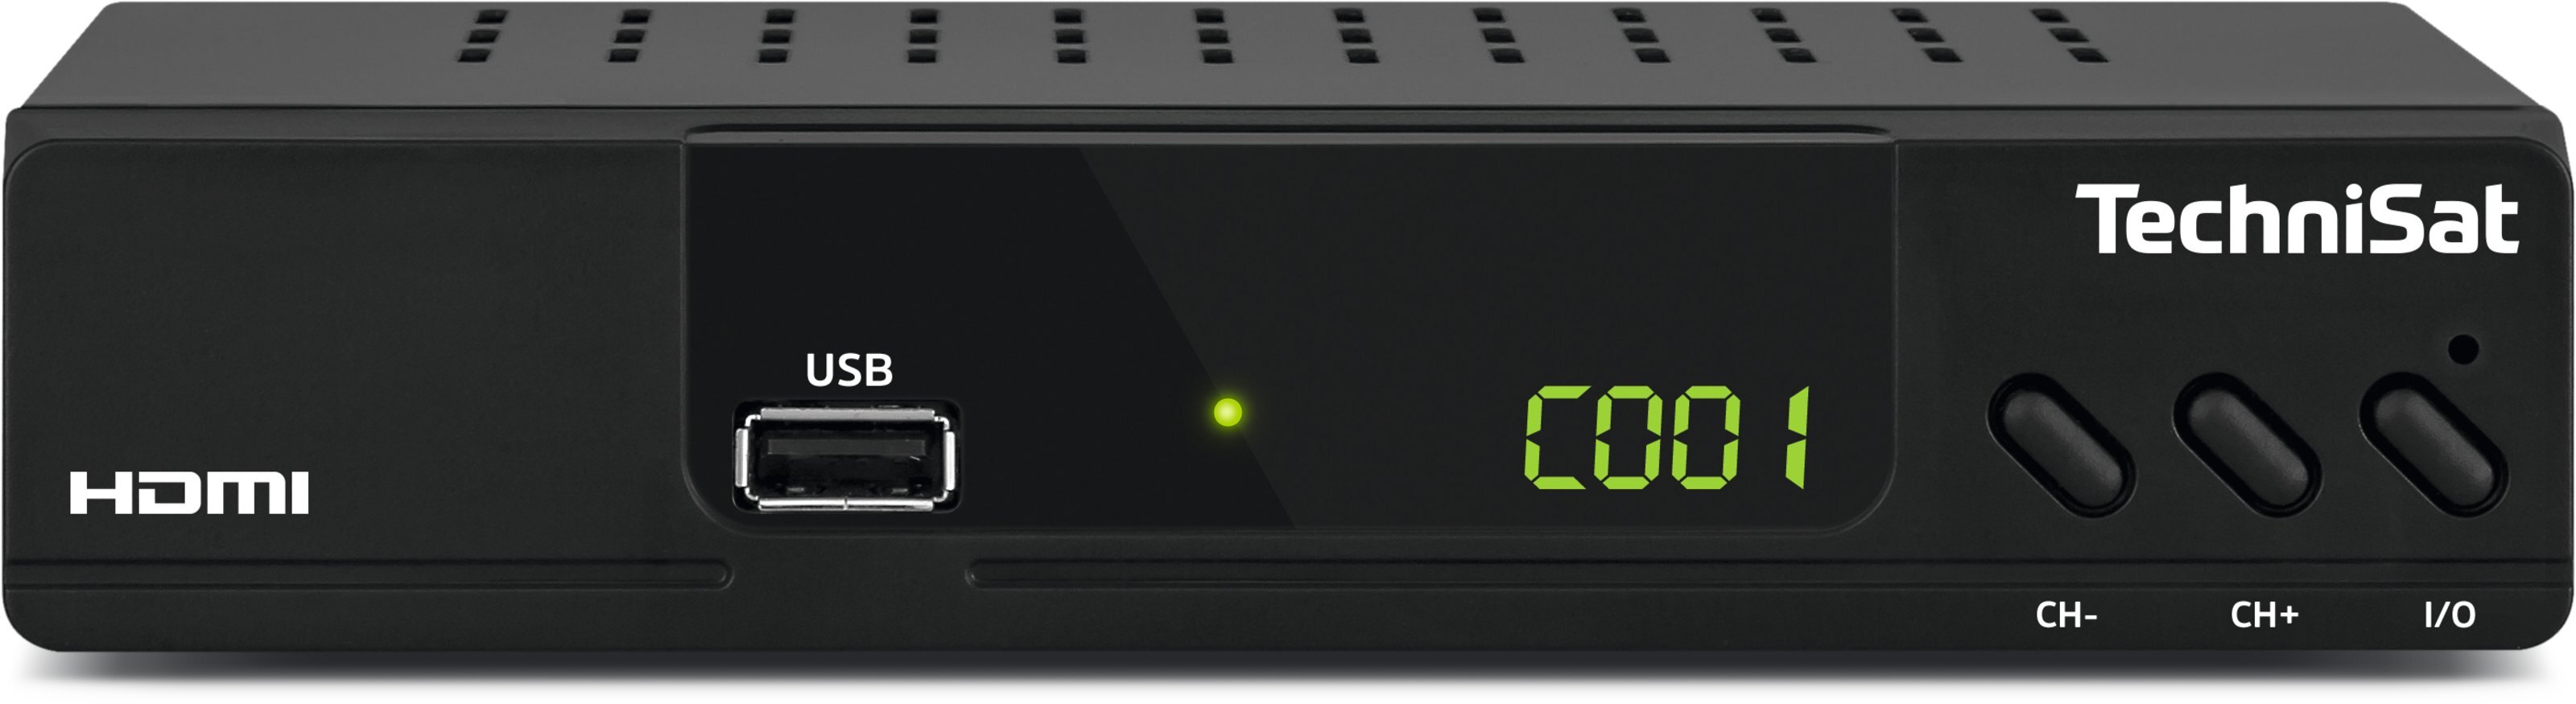 TechniSat HD-232 C